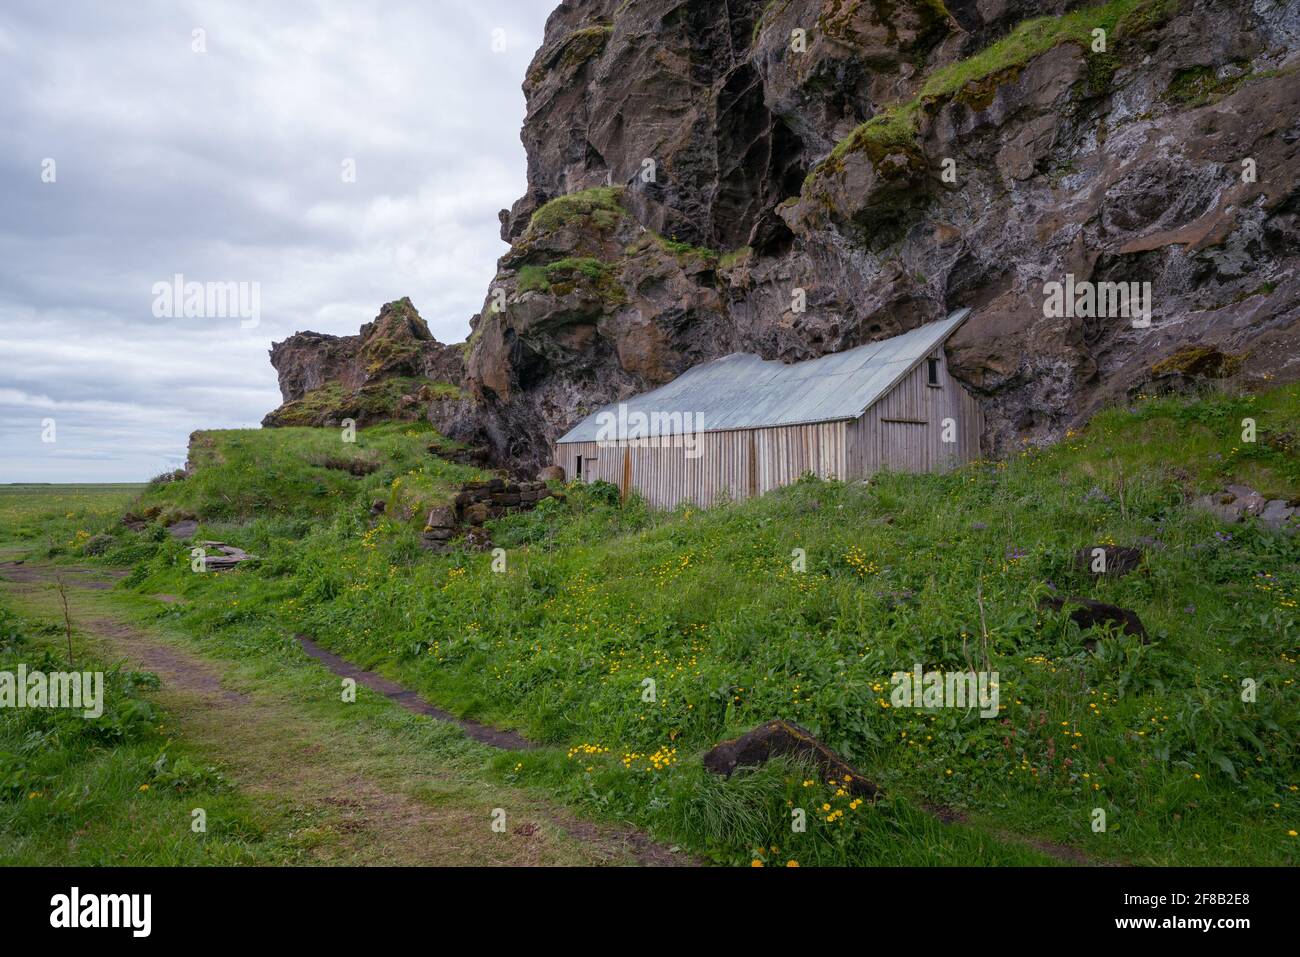 Haus in vulkanischem Gestein im Süden Islands gebaut. Wolkiger Tag, Gras im Vordergrund. Stockfoto